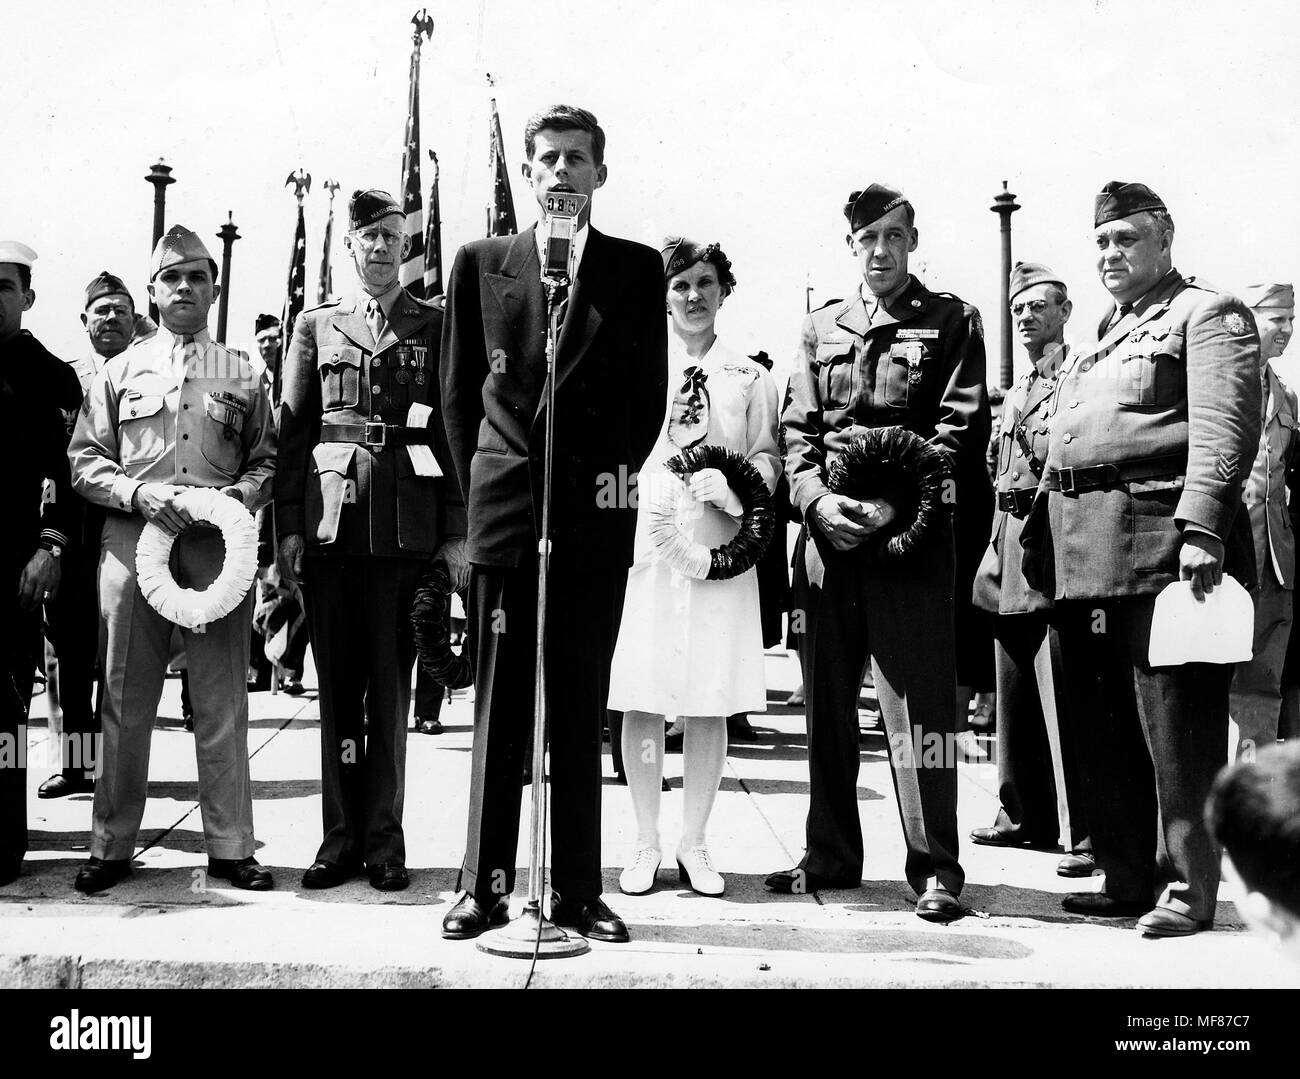 PC 360 30 Mai 1946 John-F.-Kennedy spricht am Memorial Day Services in Cambridge, Massachusetts. Bitte schreiben Sie "John Fitzgerald Kennedy Library, Boston" für das Bild. Stockfoto